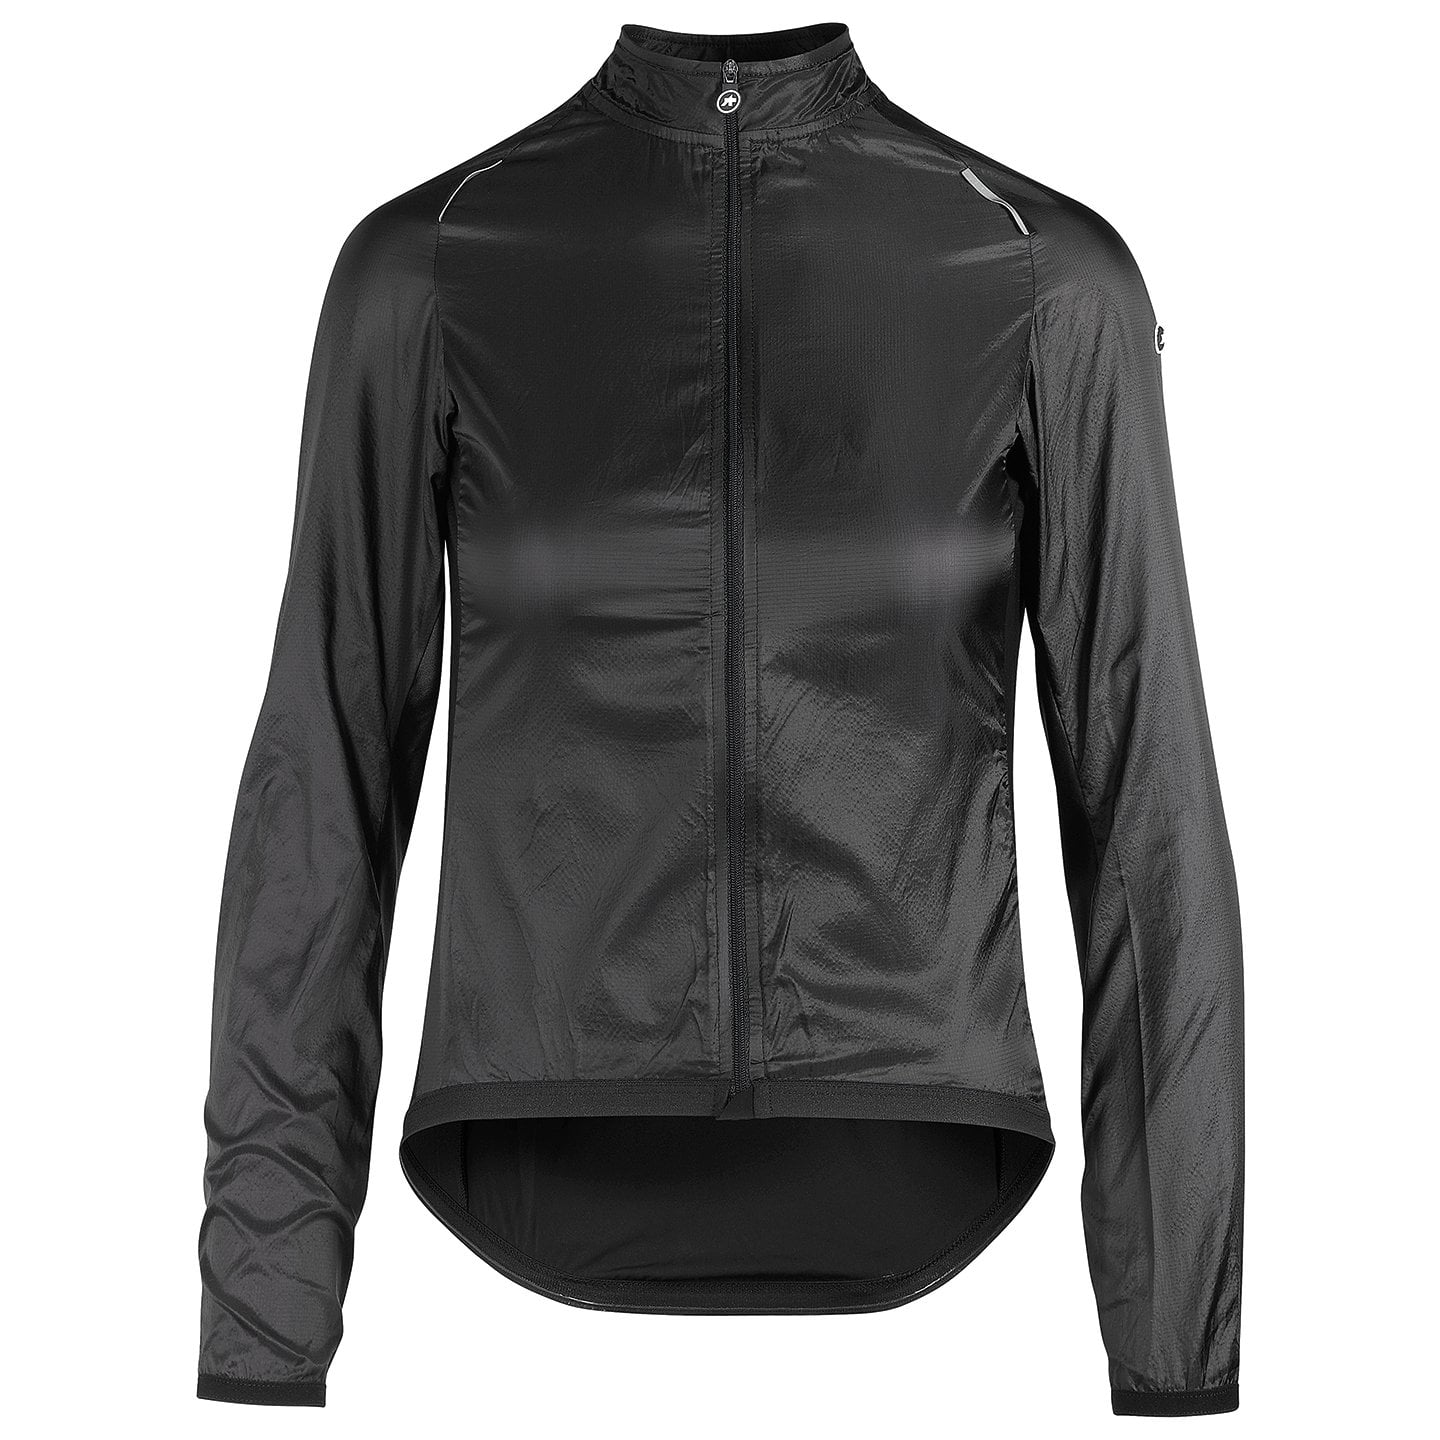 ASSOS UMA GT Women’s Wind Jacket Women’s Wind Jacket, size S, Cycle jacket, Cycle clothing